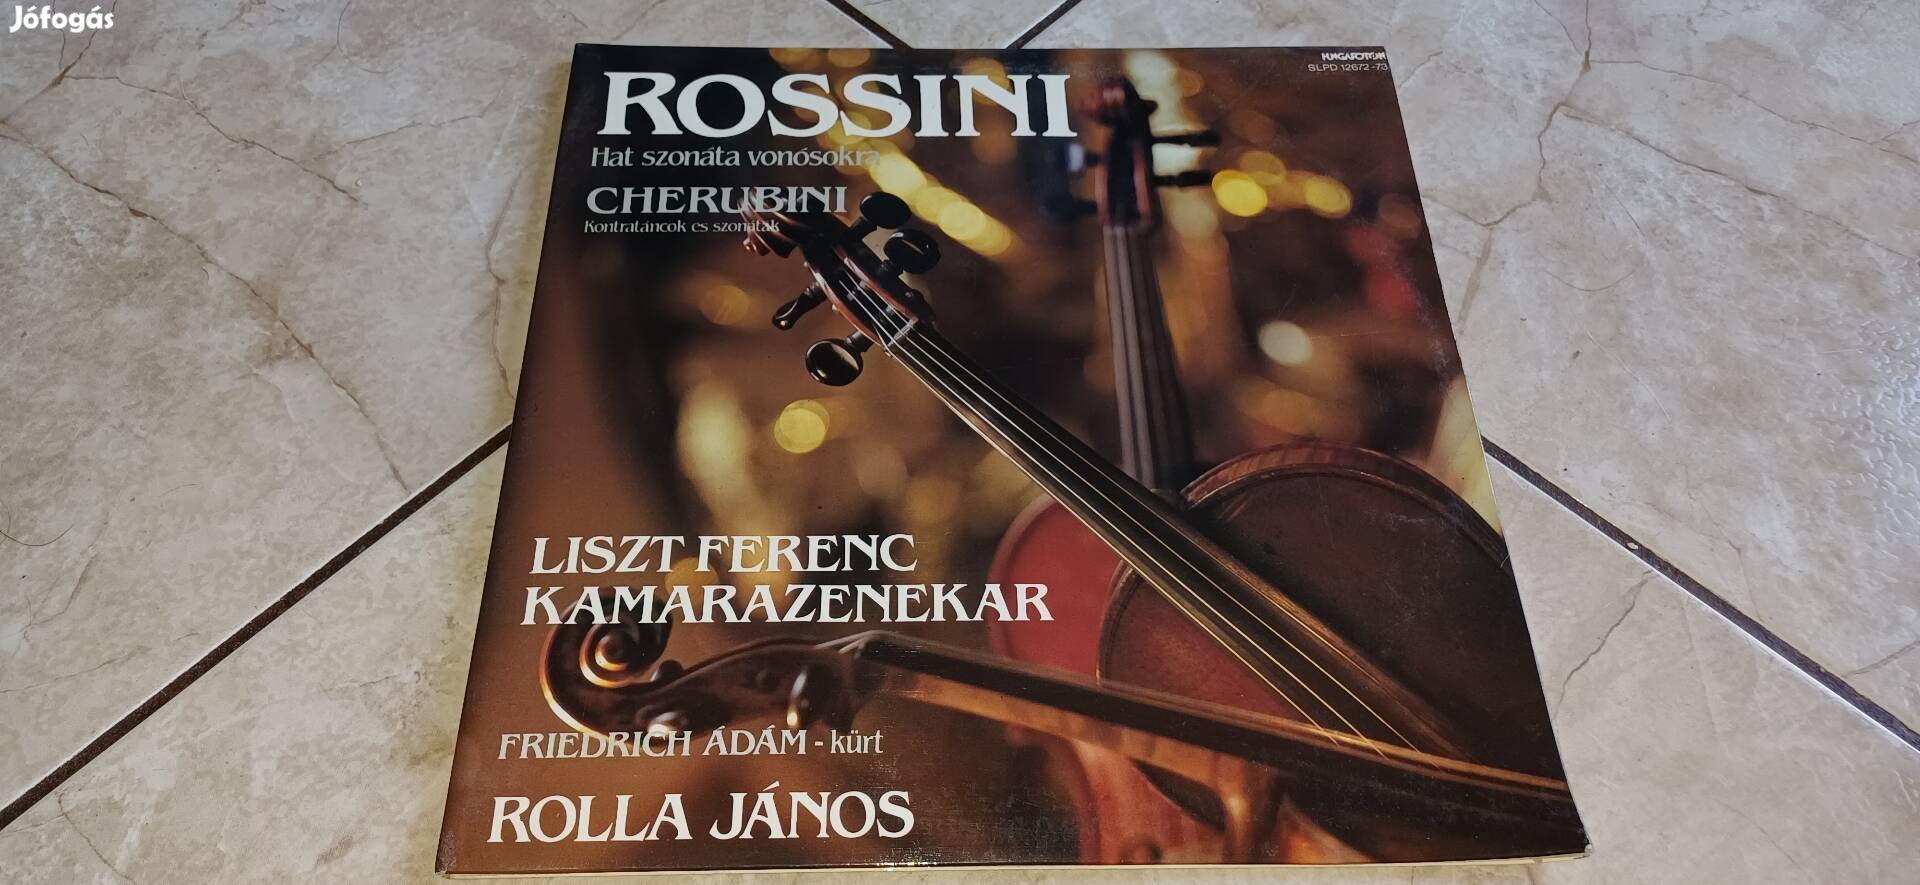 Rossini dupla bakelit hanglemez